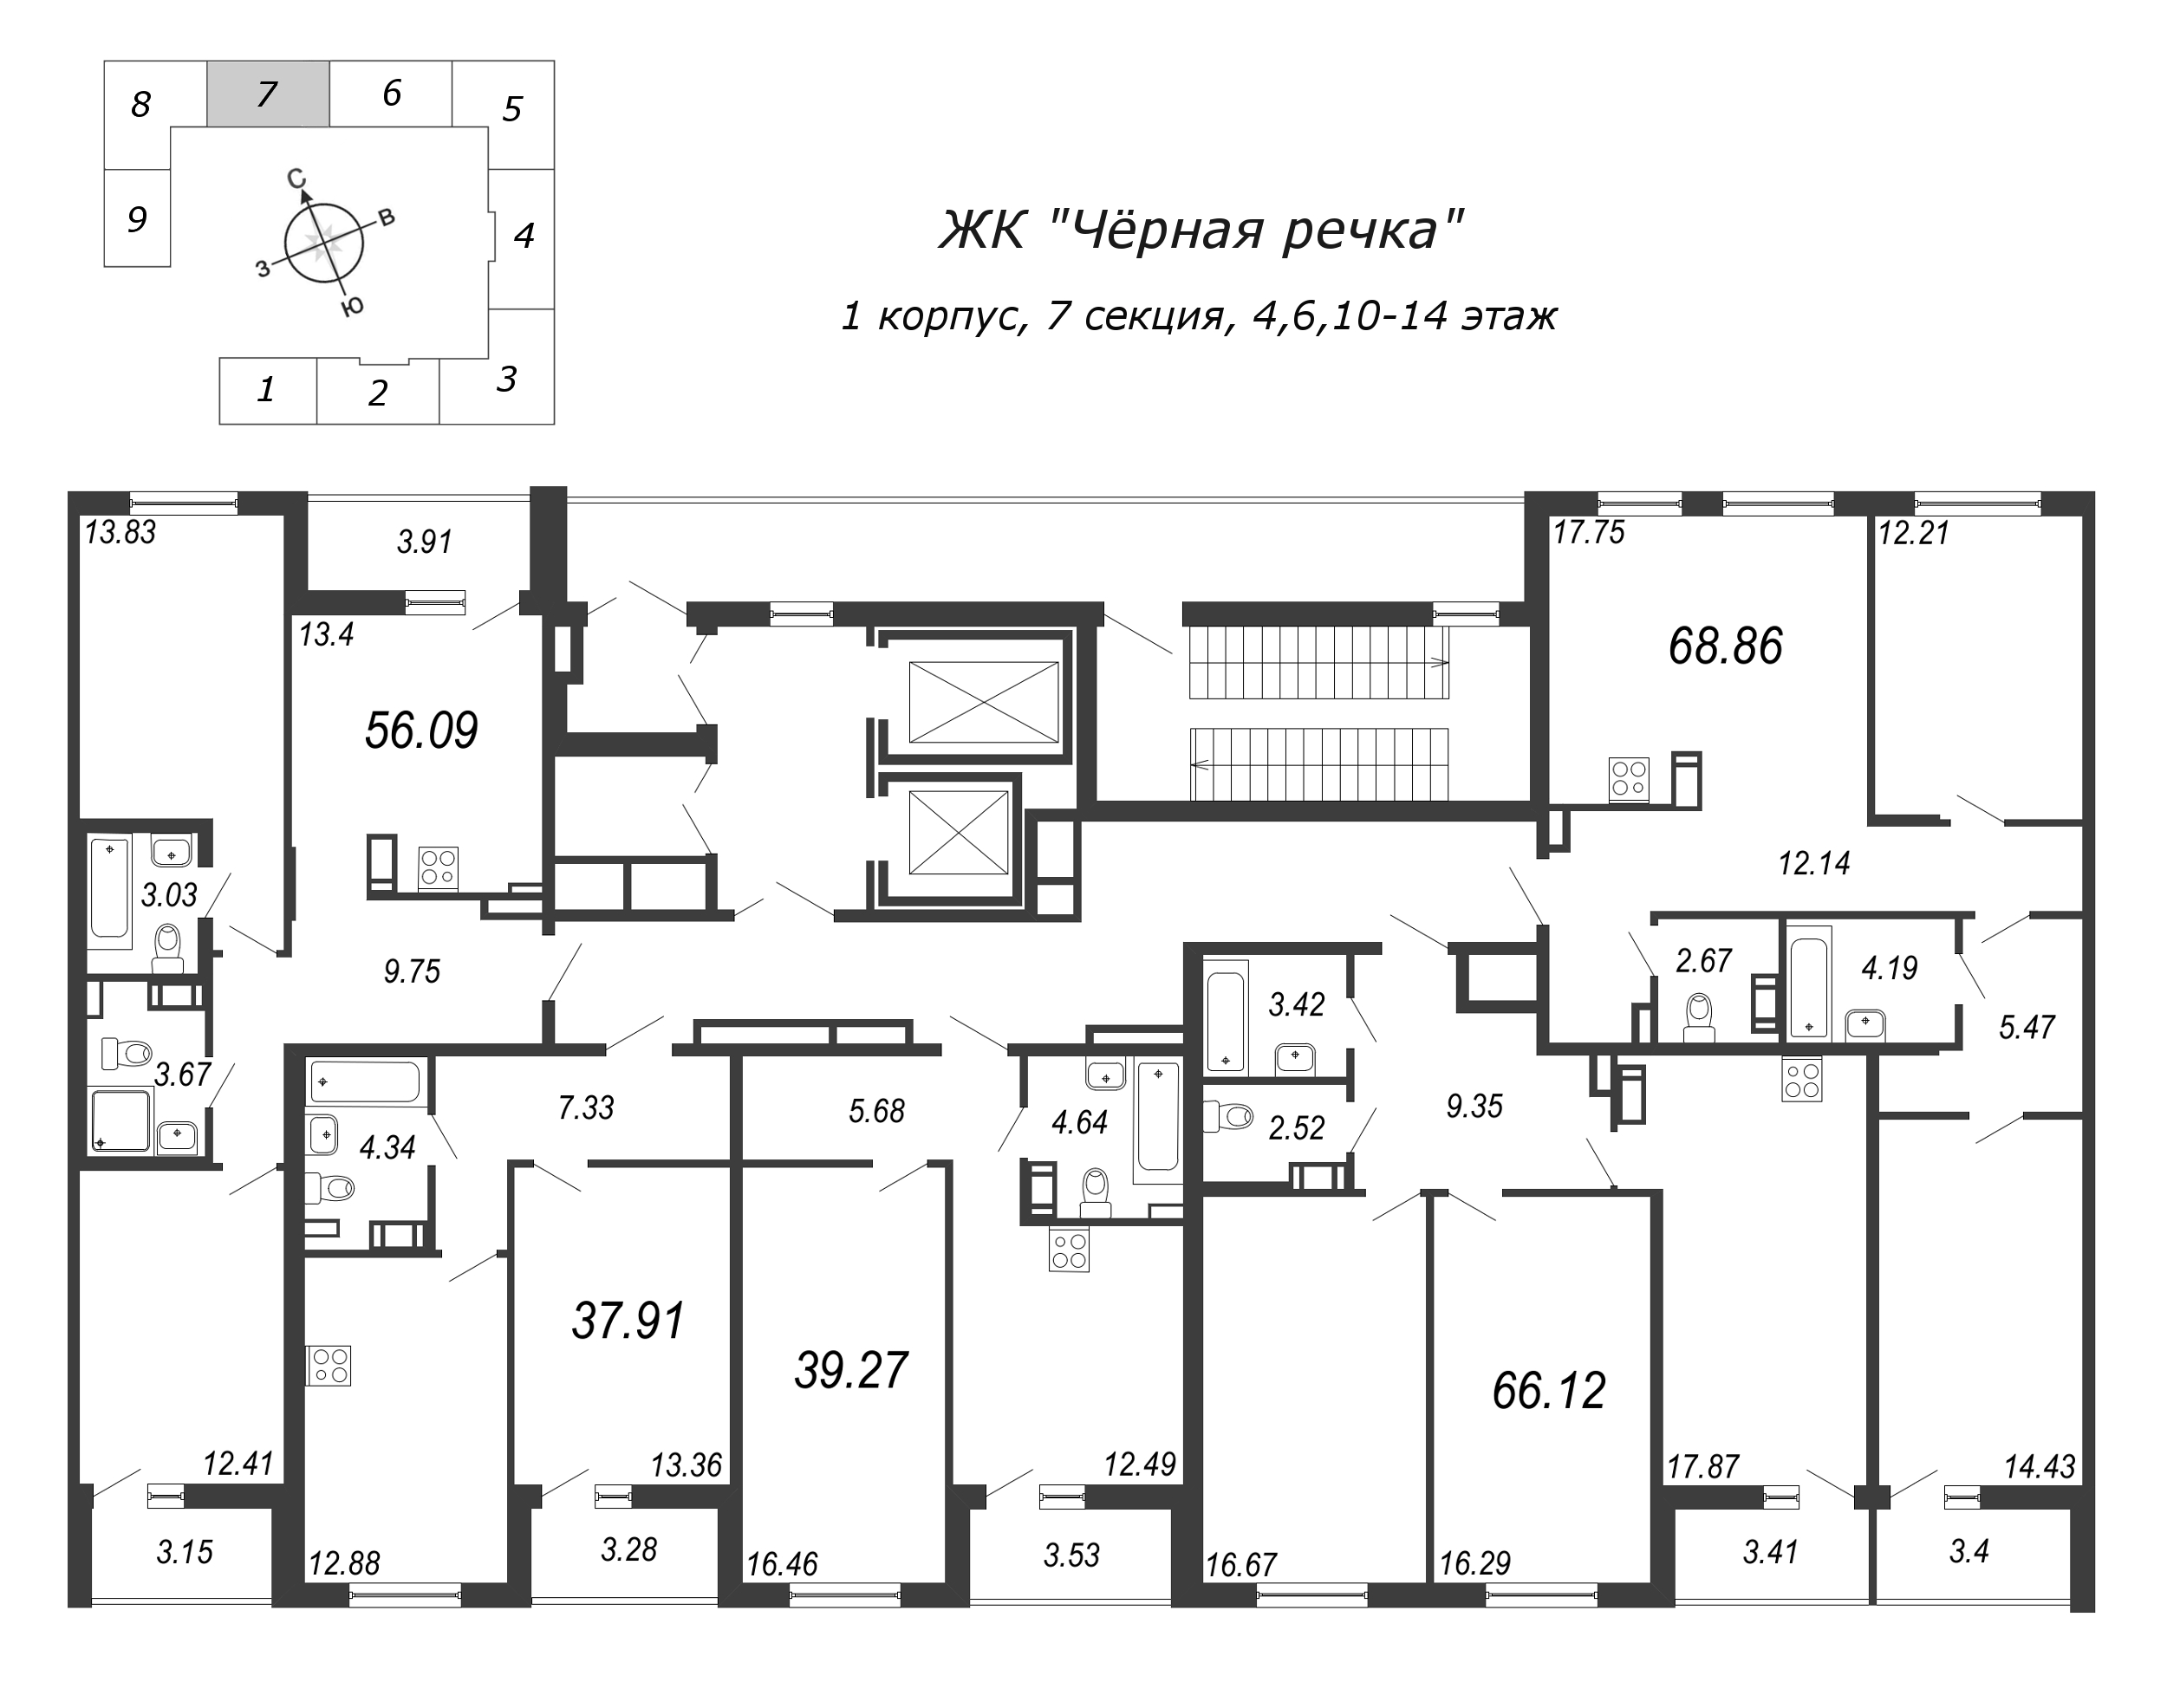 3-комнатная (Евро) квартира, 68.86 м² в ЖК "Чёрная речка" - планировка этажа